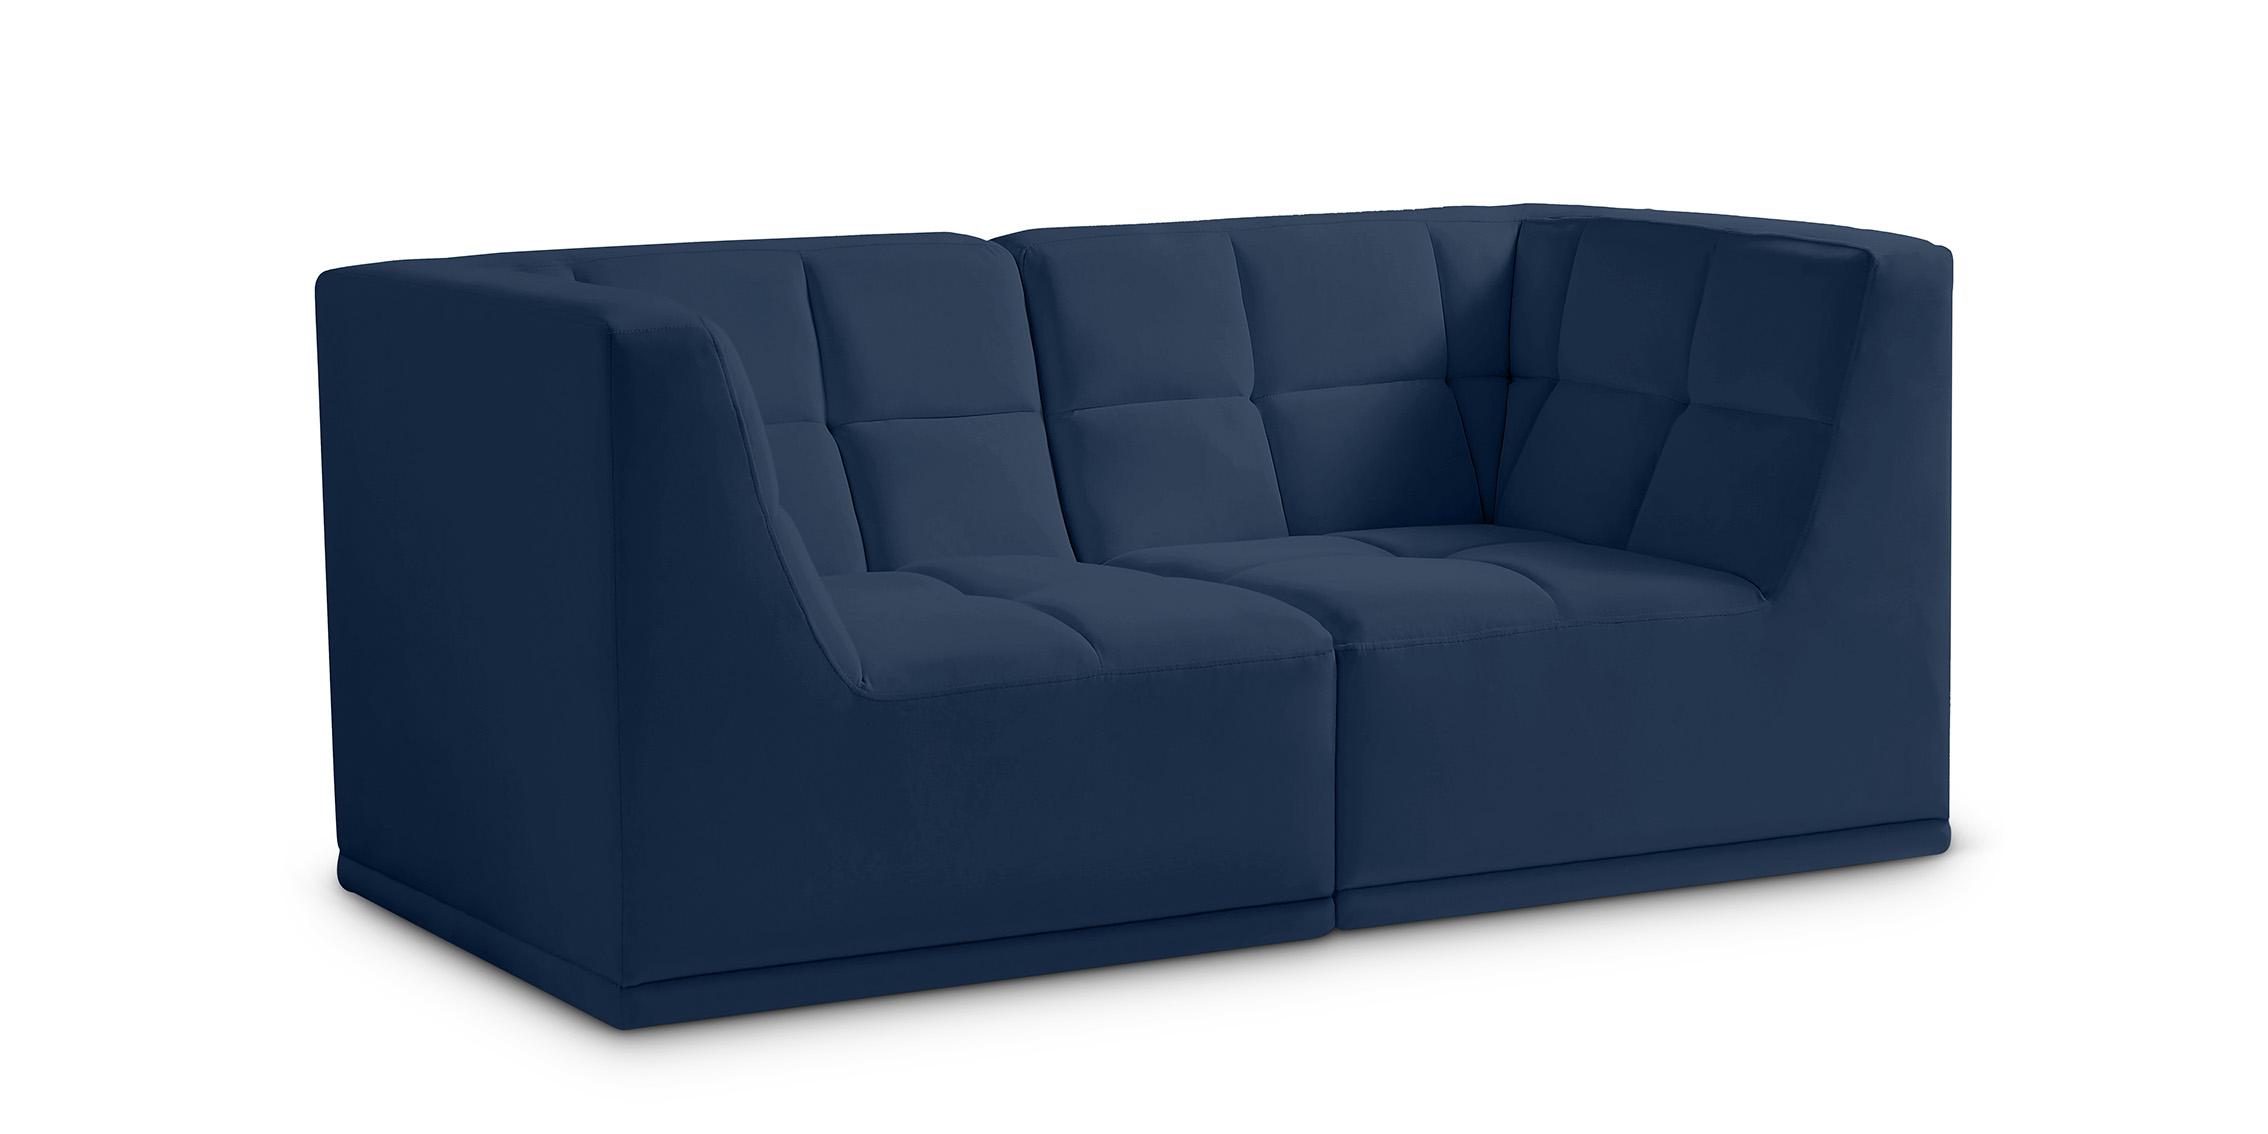 Contemporary, Modern Modular Sofa RELAX 650Navy-S68 650Navy-S68 in Navy Velvet